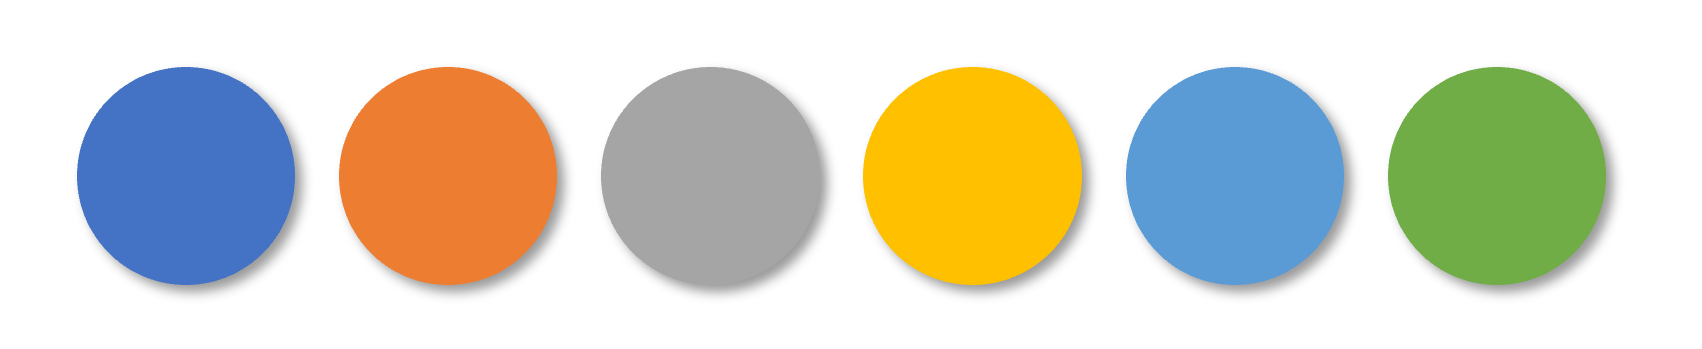 Punkte mit den 6 Akzentfarben der aktuellen Office-Designfarbpalette: Blau, Orange, Hellgrau, Gelb, Hellblau, Hellgrün